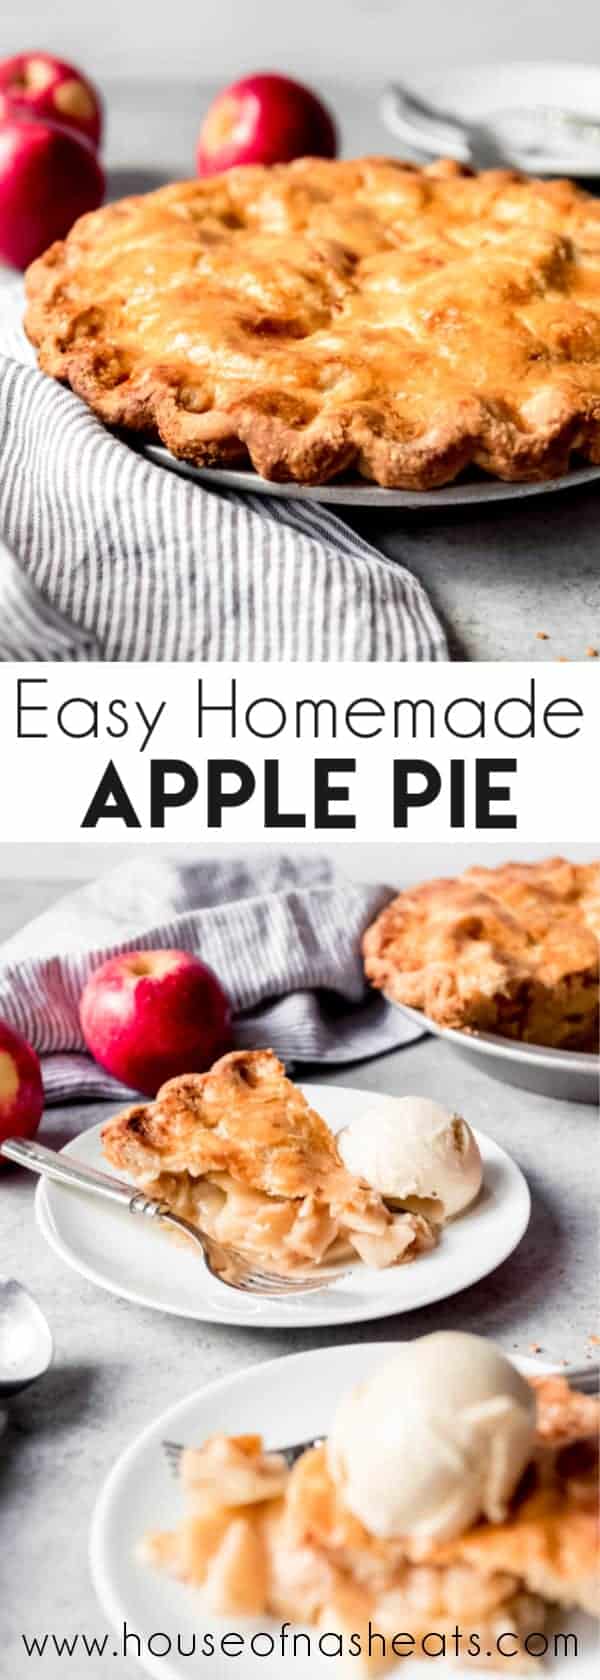 Easy homemade apple pie